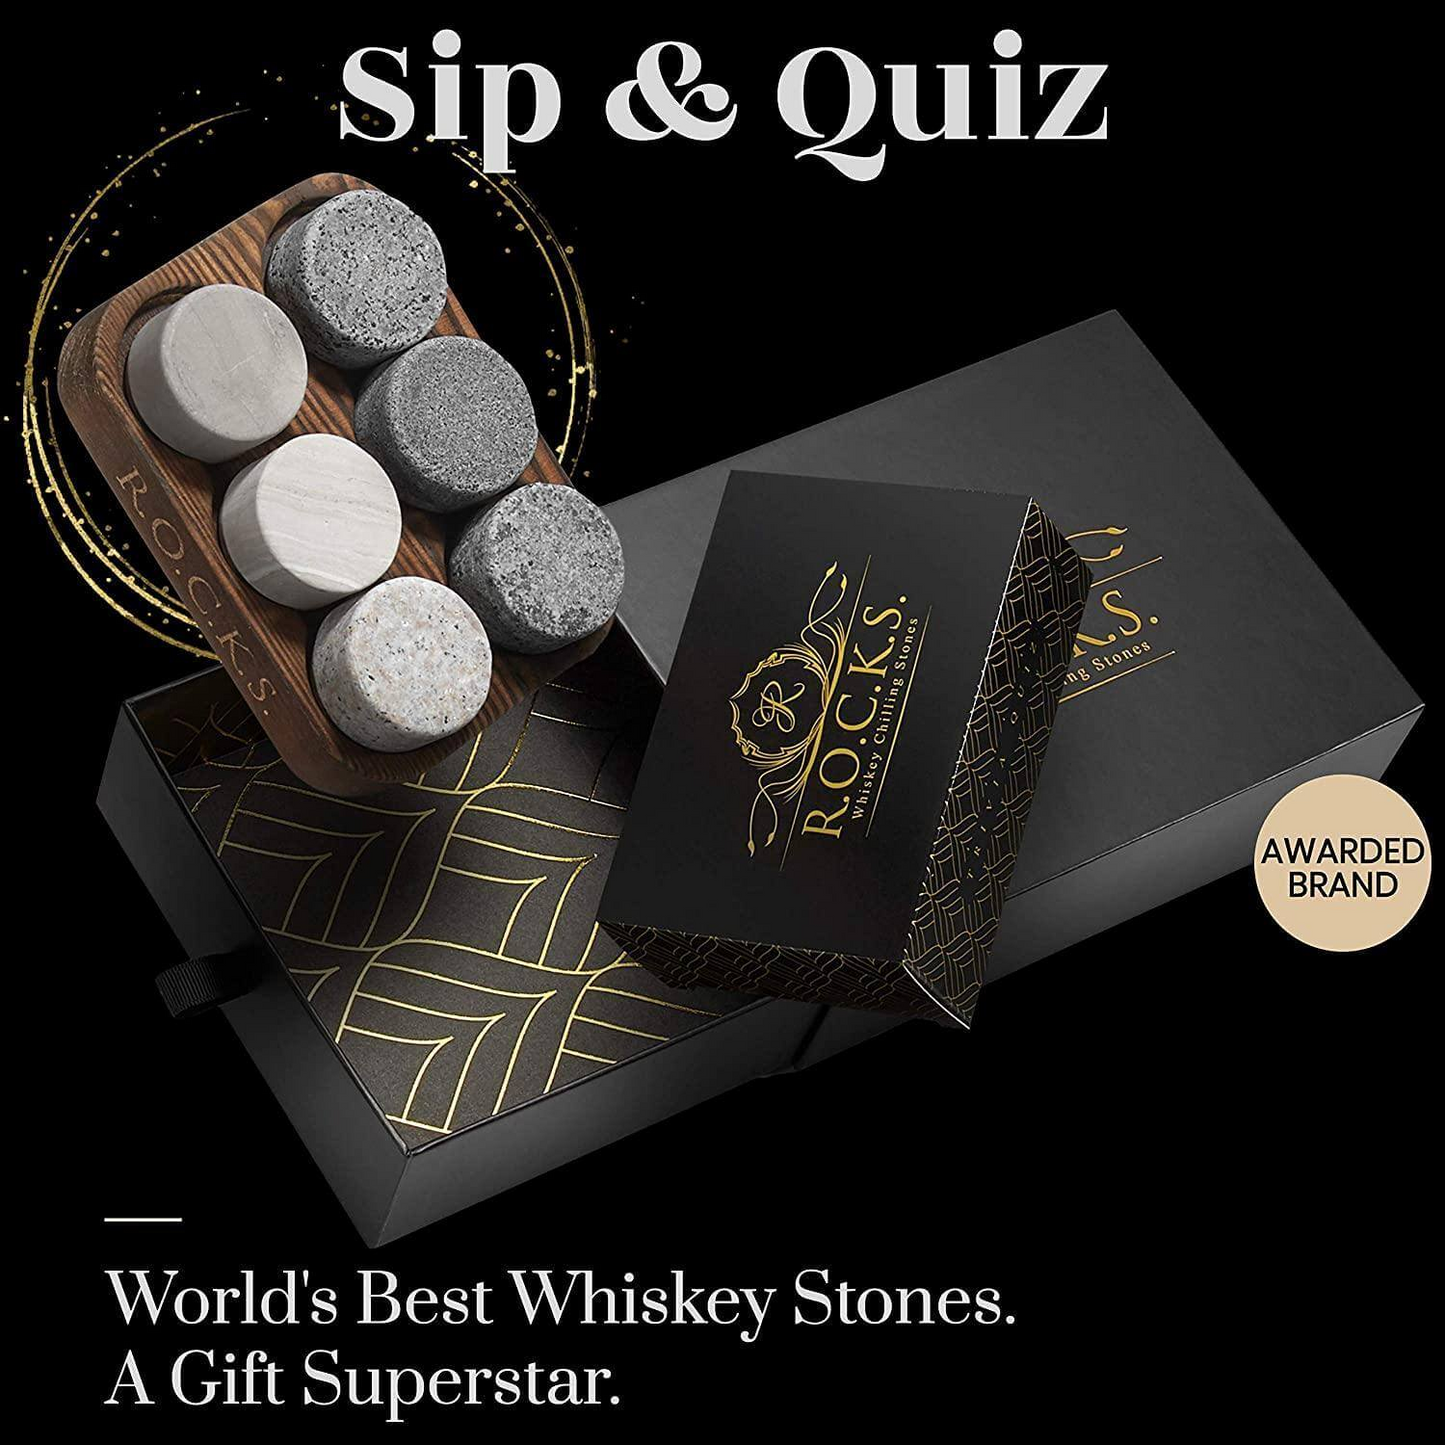 Whiskey Chilling Stones & Whiskey Quiz Gift Set - 100 Q&A